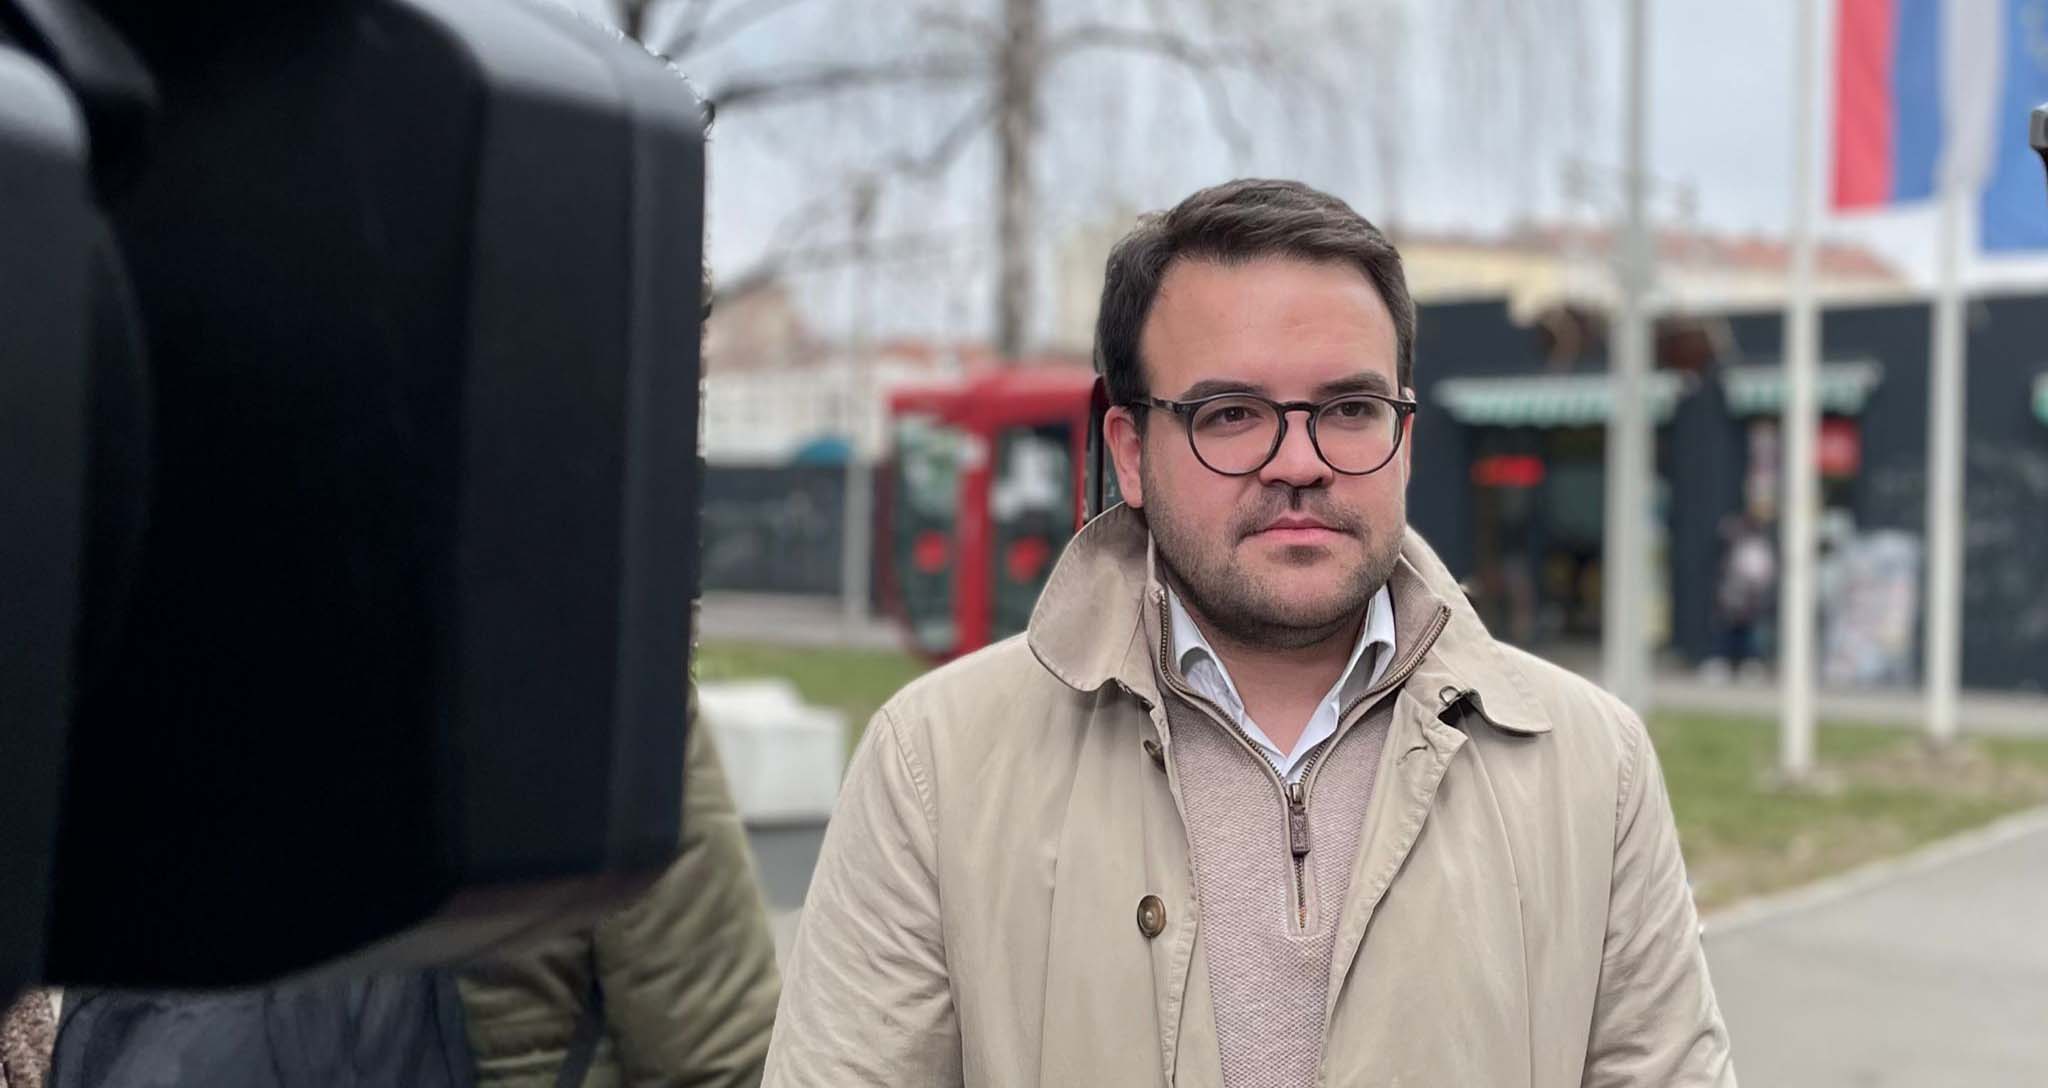 Јовановић: Грађанима нудимо решења, а СНС нуди прљаву кампању против опозиције